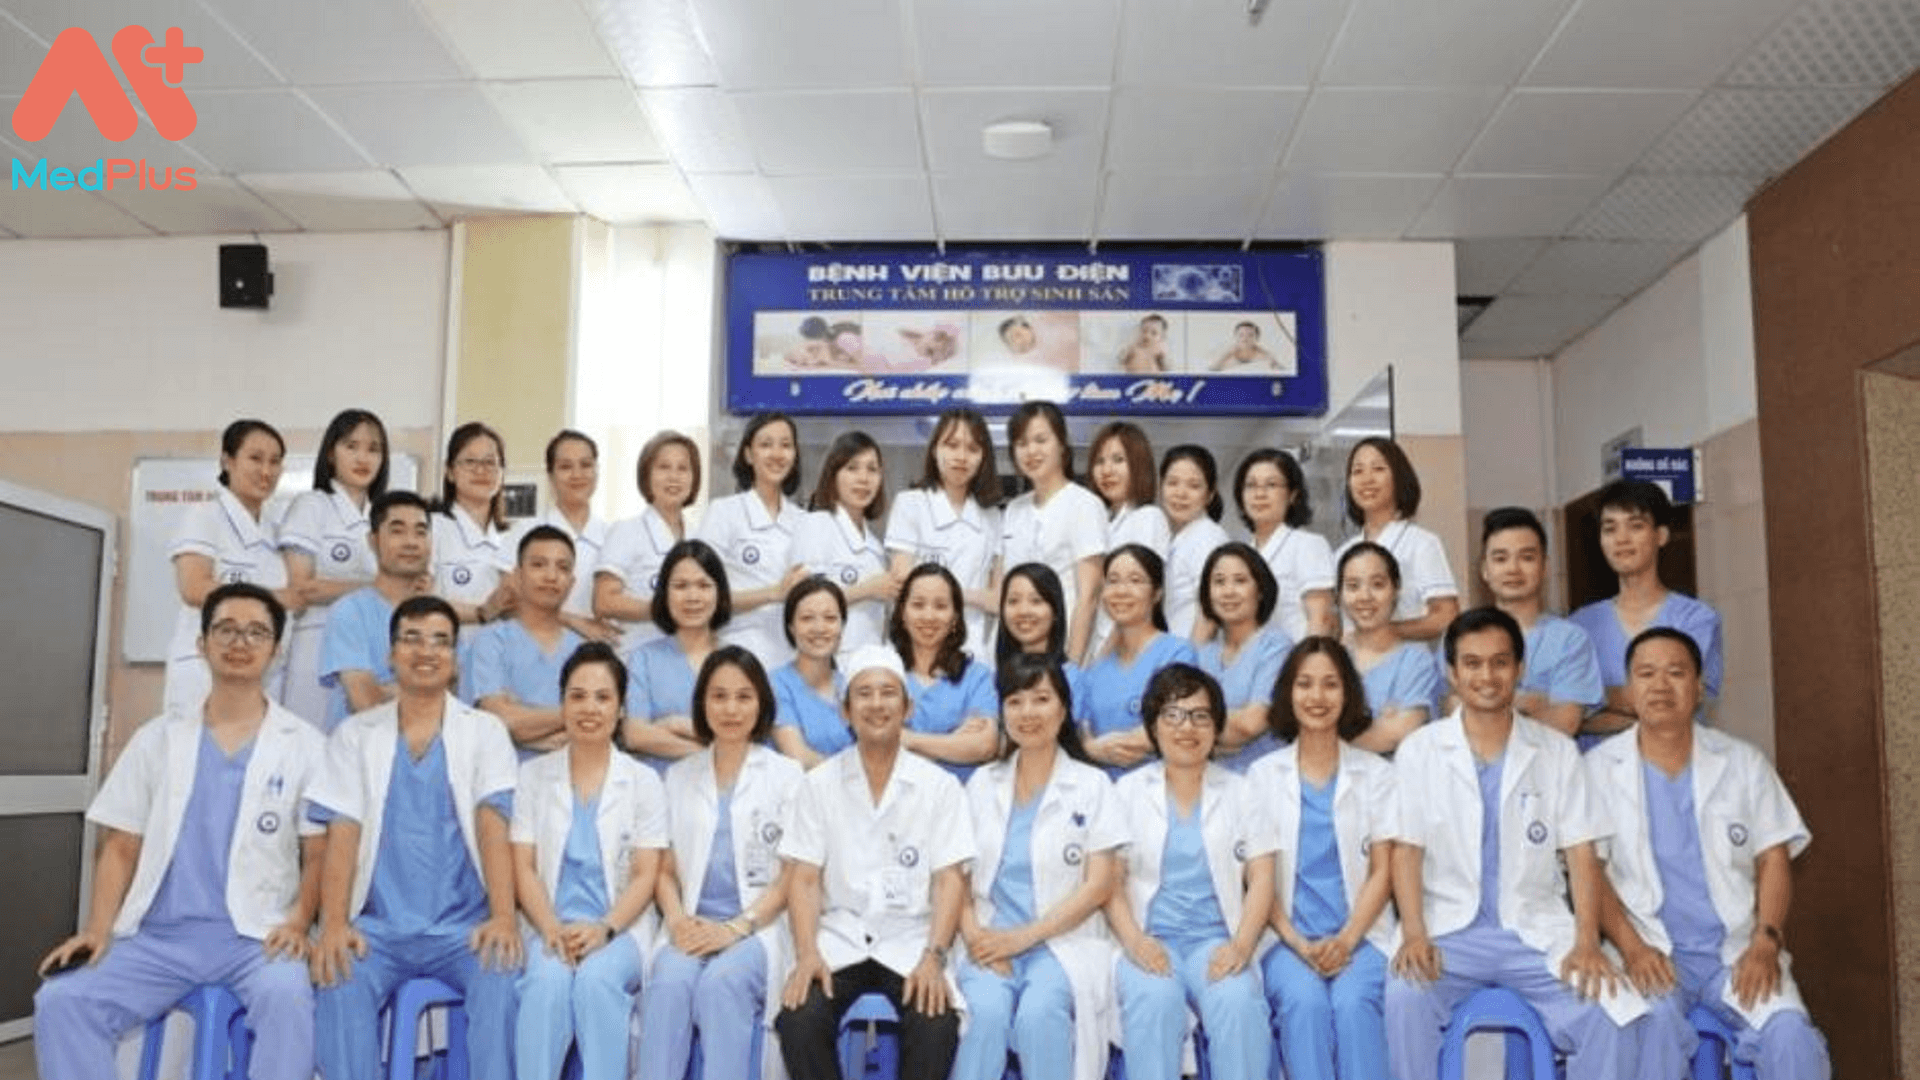 Đội ngũ bác sĩ Bệnh viện Bưu điện Hà Nội